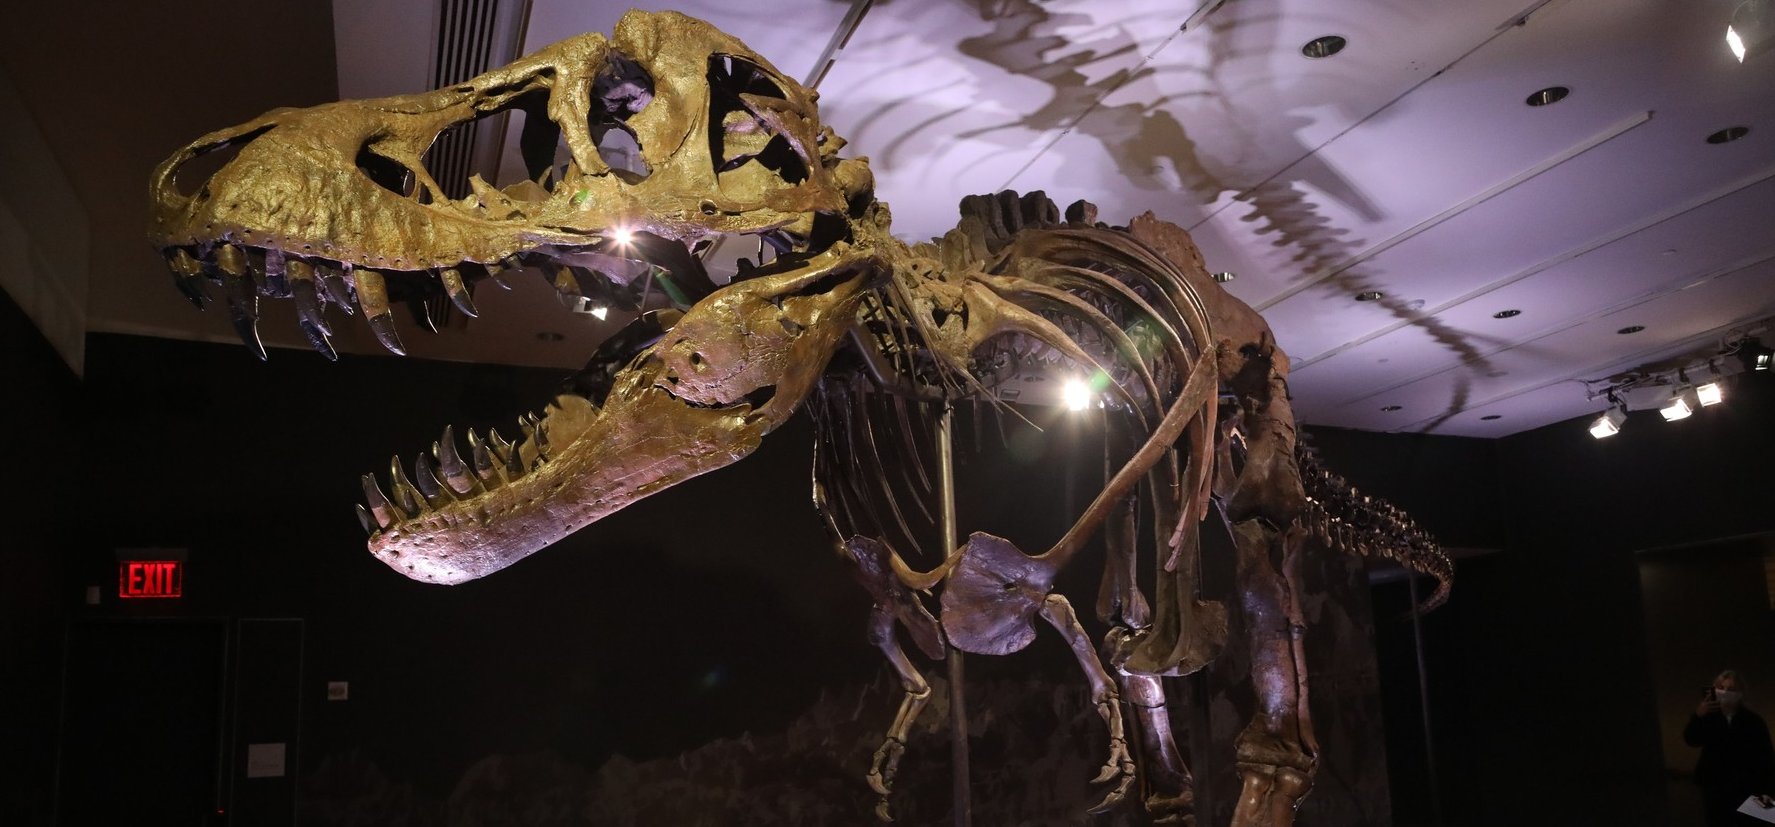 Kiderült hol látható majd a 32 millió dolláros T-rex csontváz – galéria